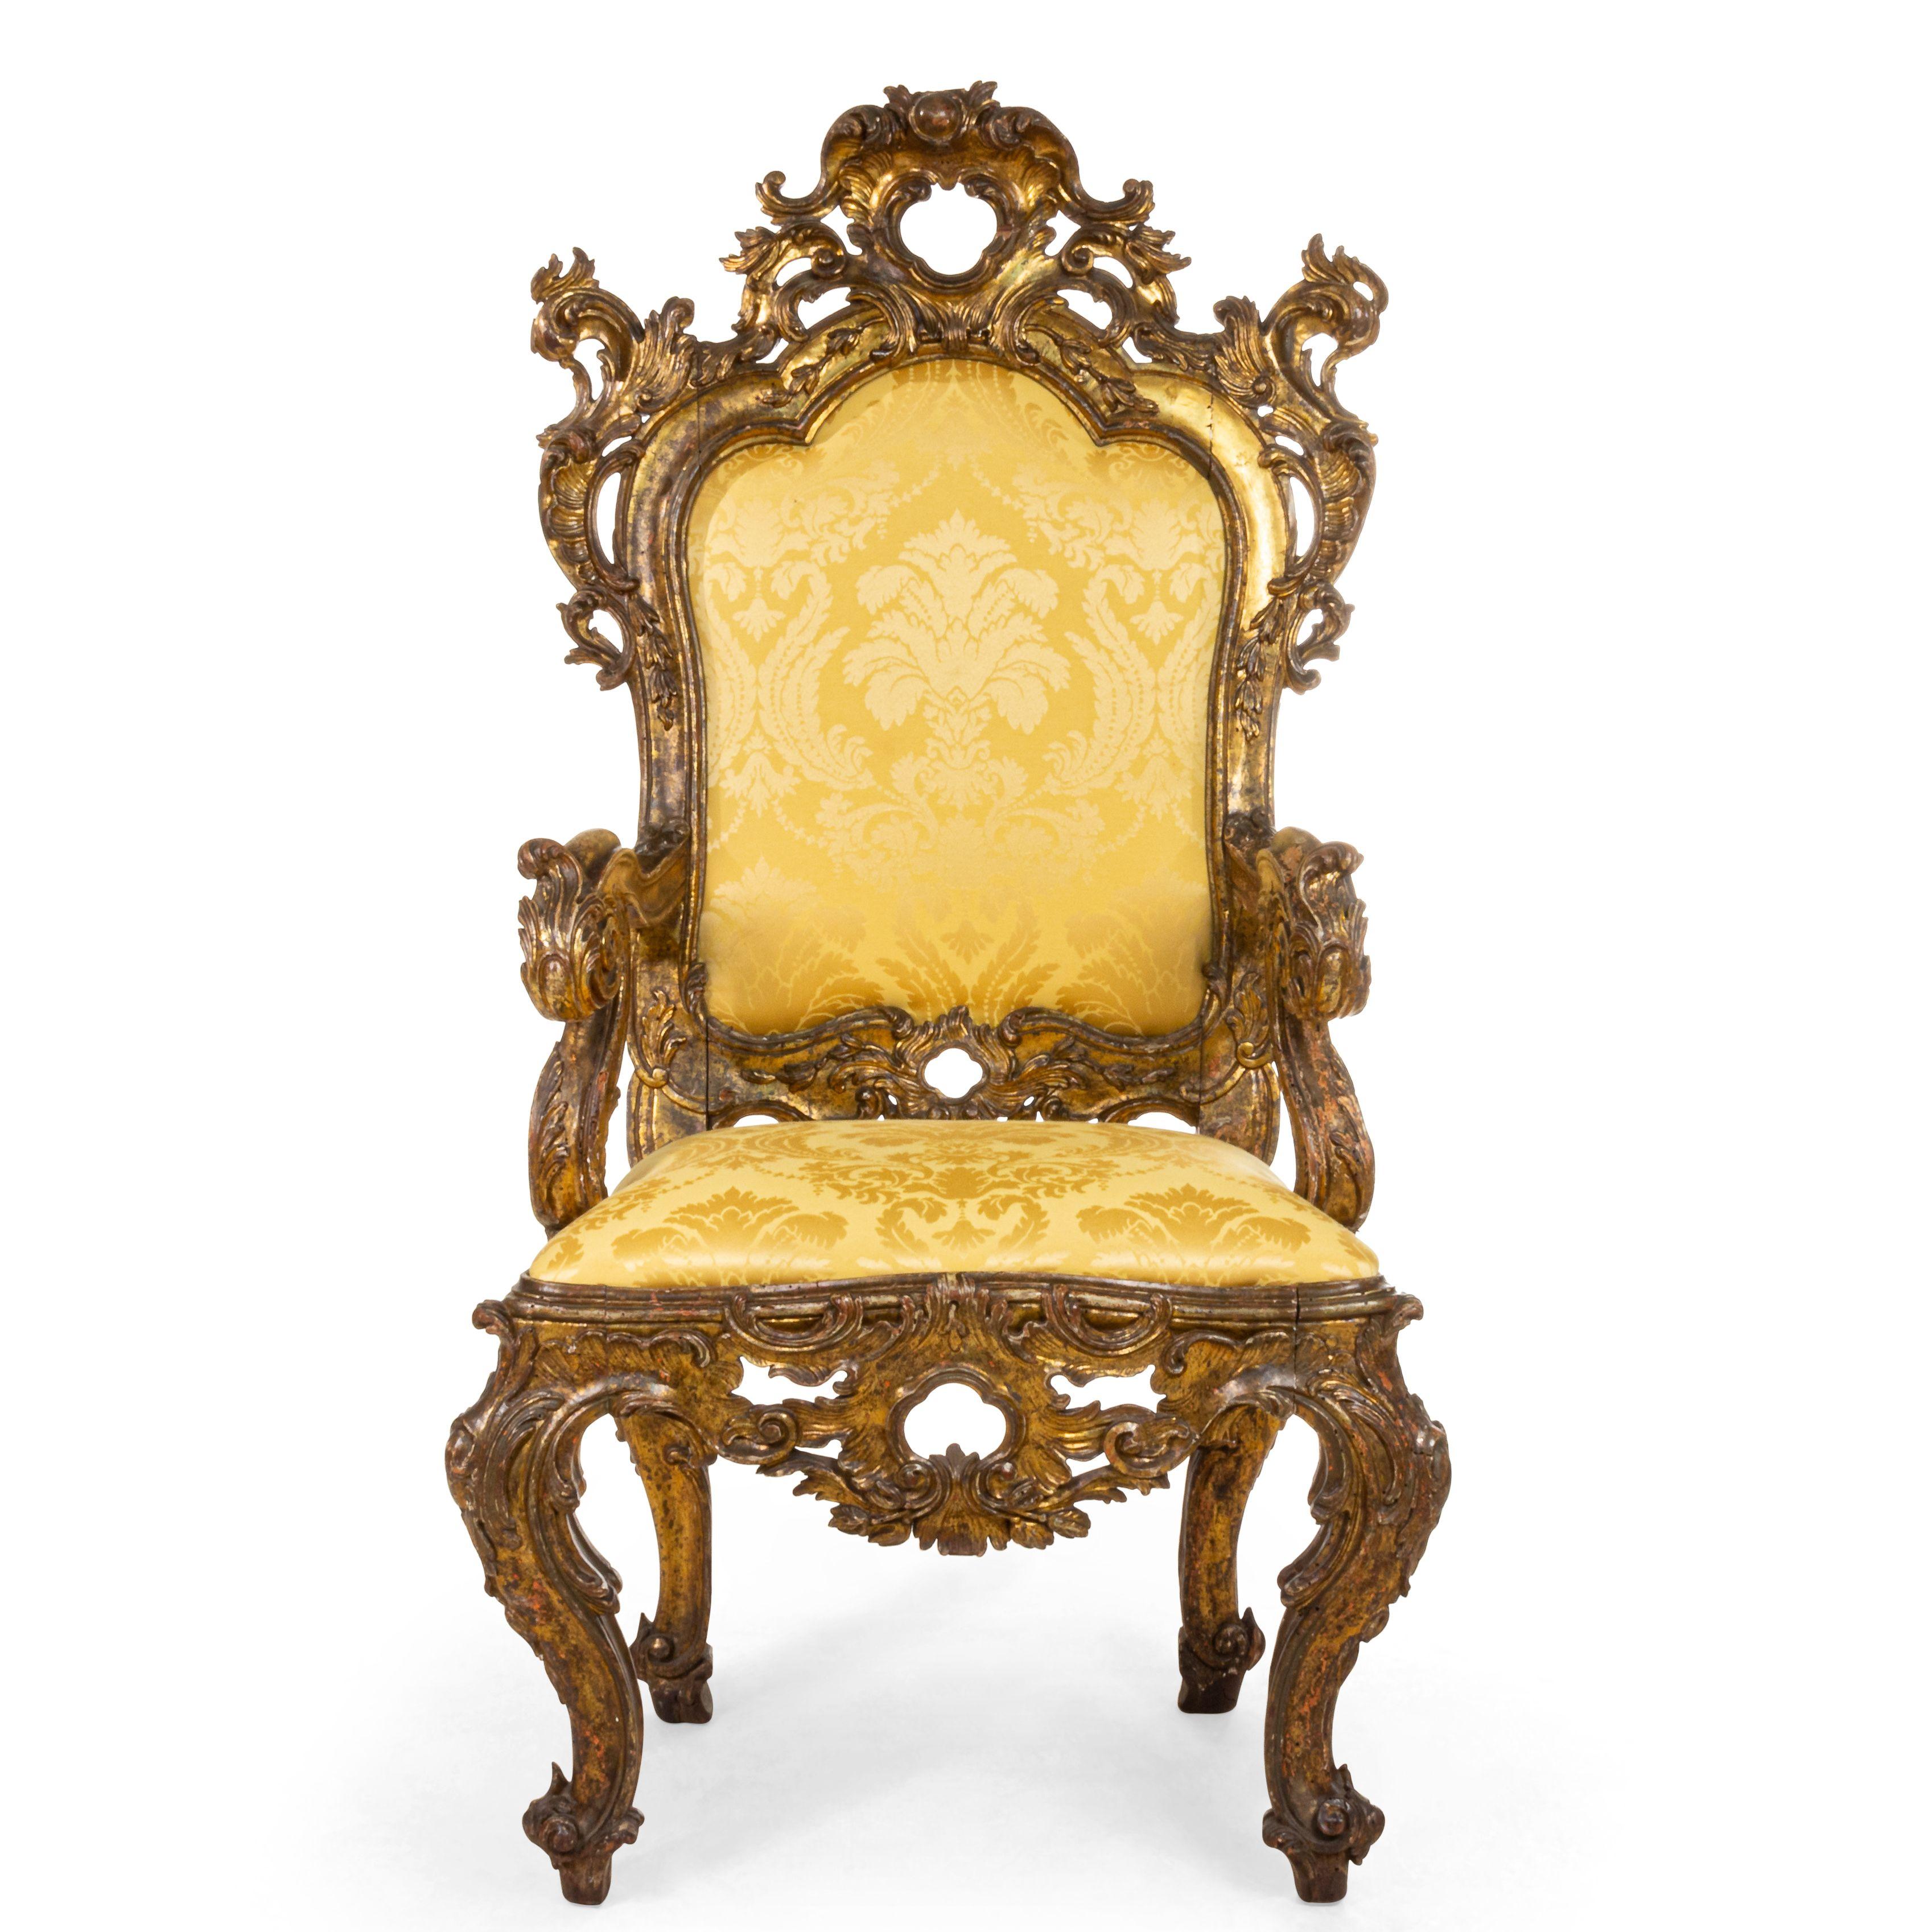 Anciennes chaises trônes Rococo italiennes à haut dossier sculpté et doré, avec assise et dossier en damas doré.